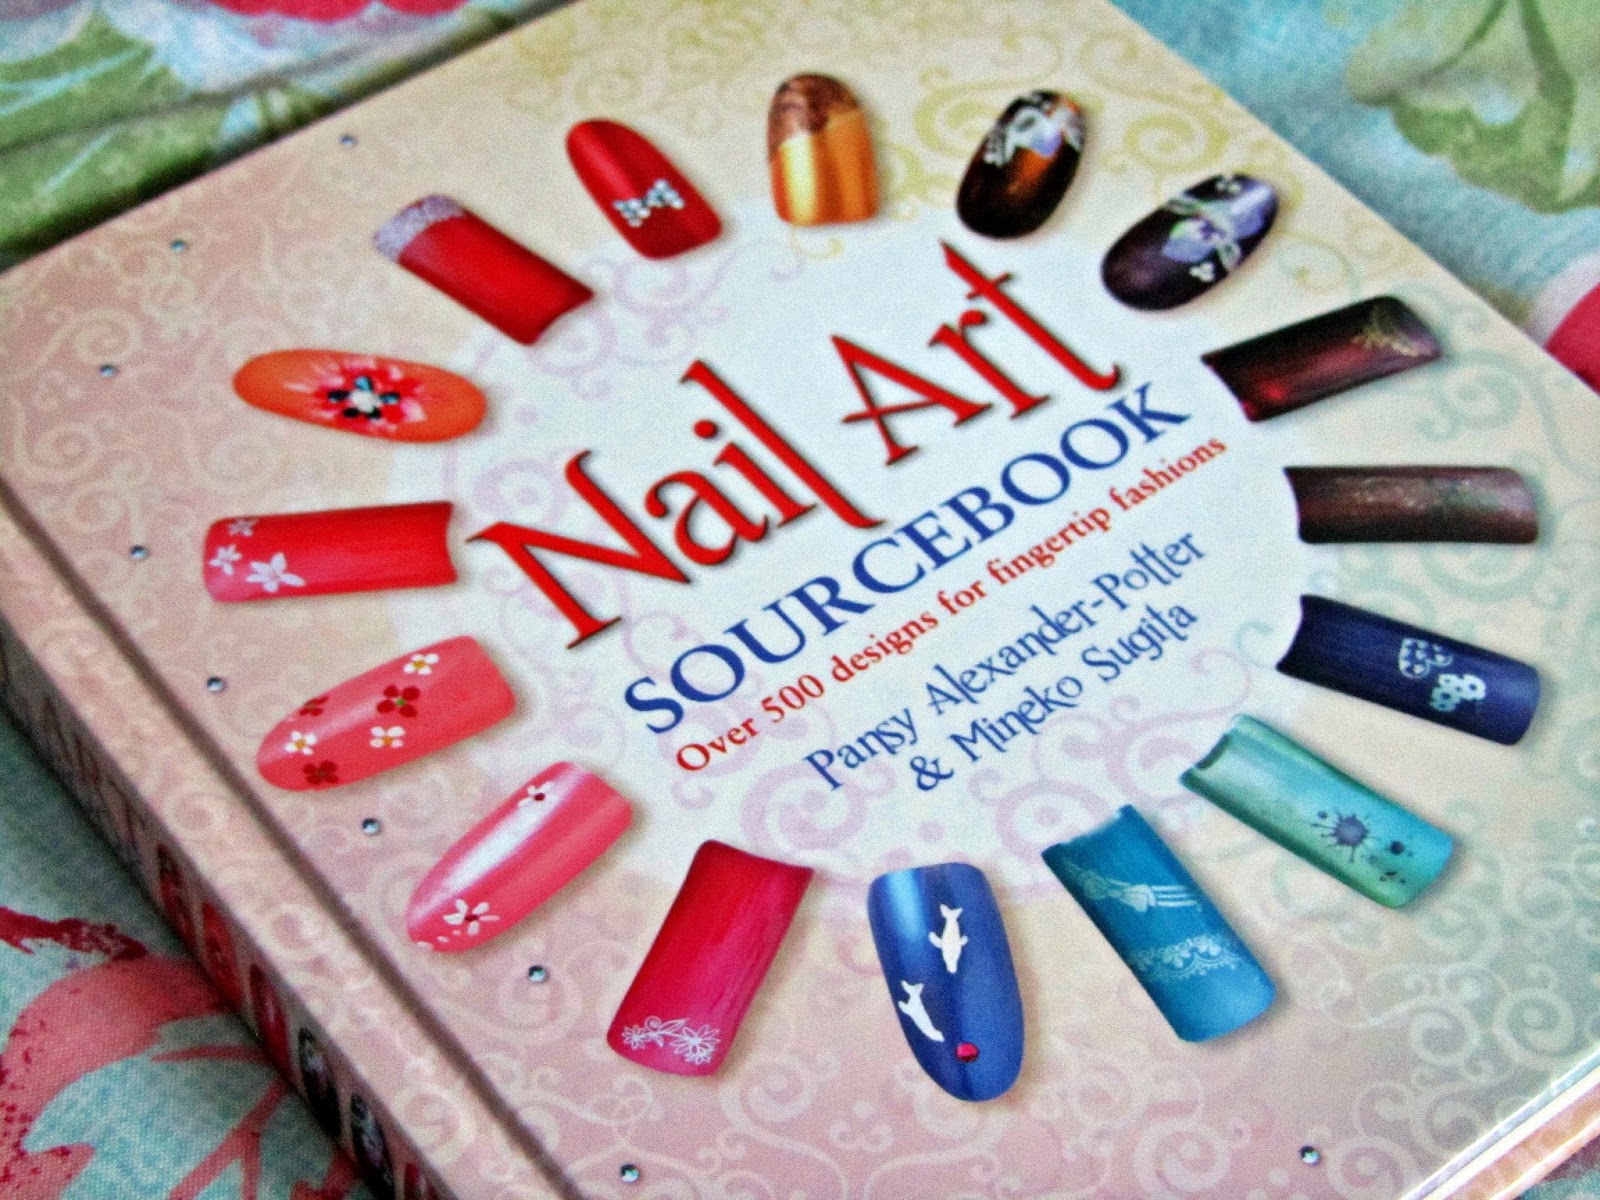 pansy alexander nail art book